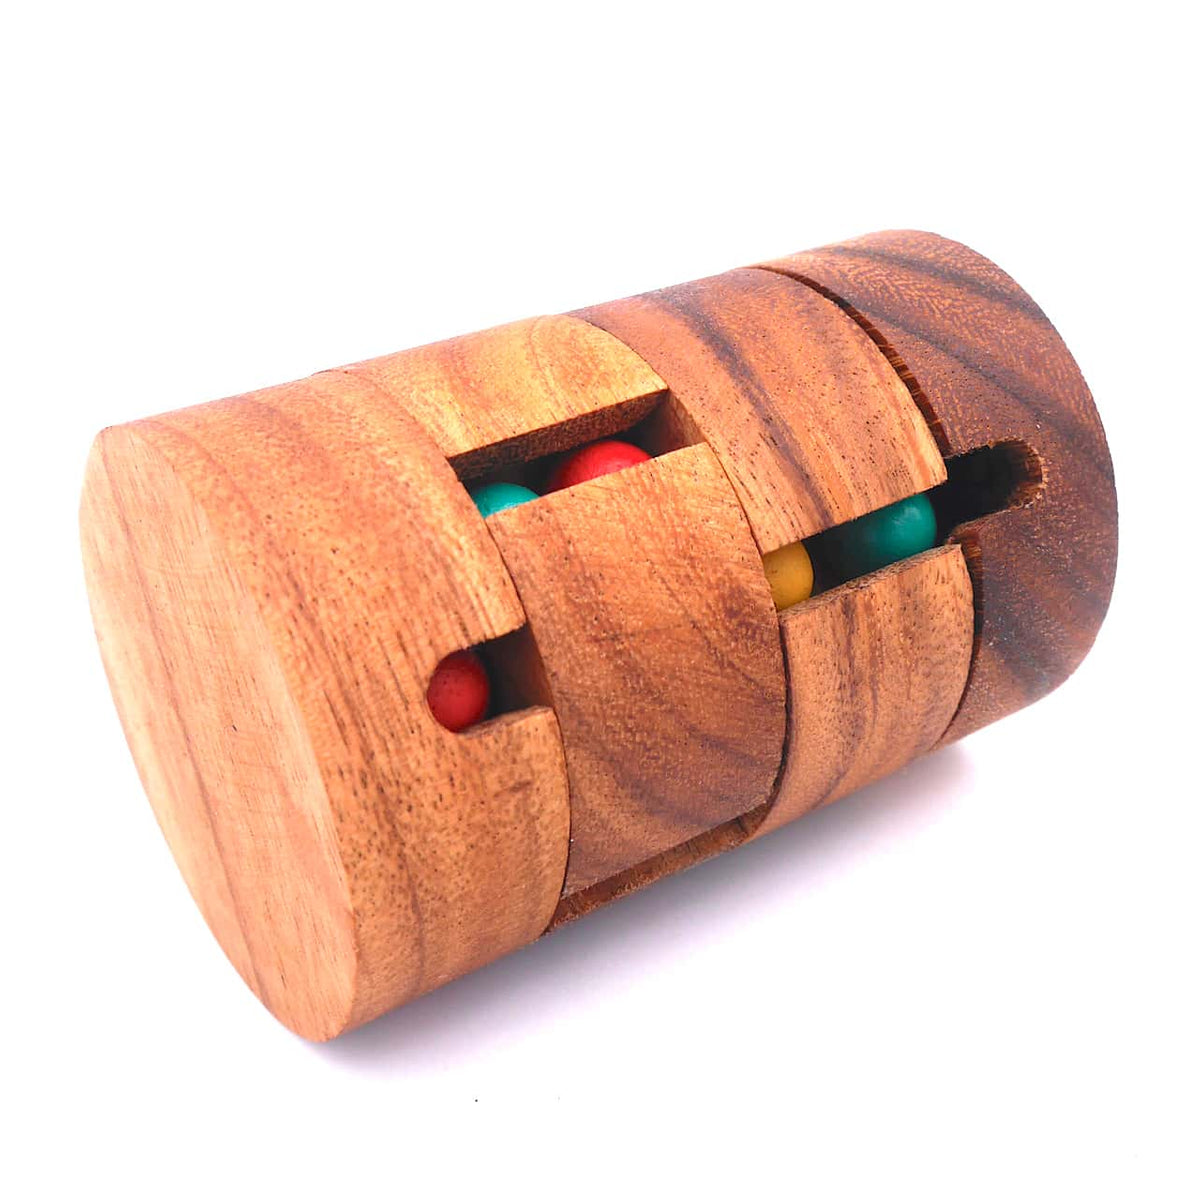 Bei dem Knobelspiel aus Holz sind die beweglichen Ringe verschoben. In den Schächten befinden sich farbige Holzkugeln.